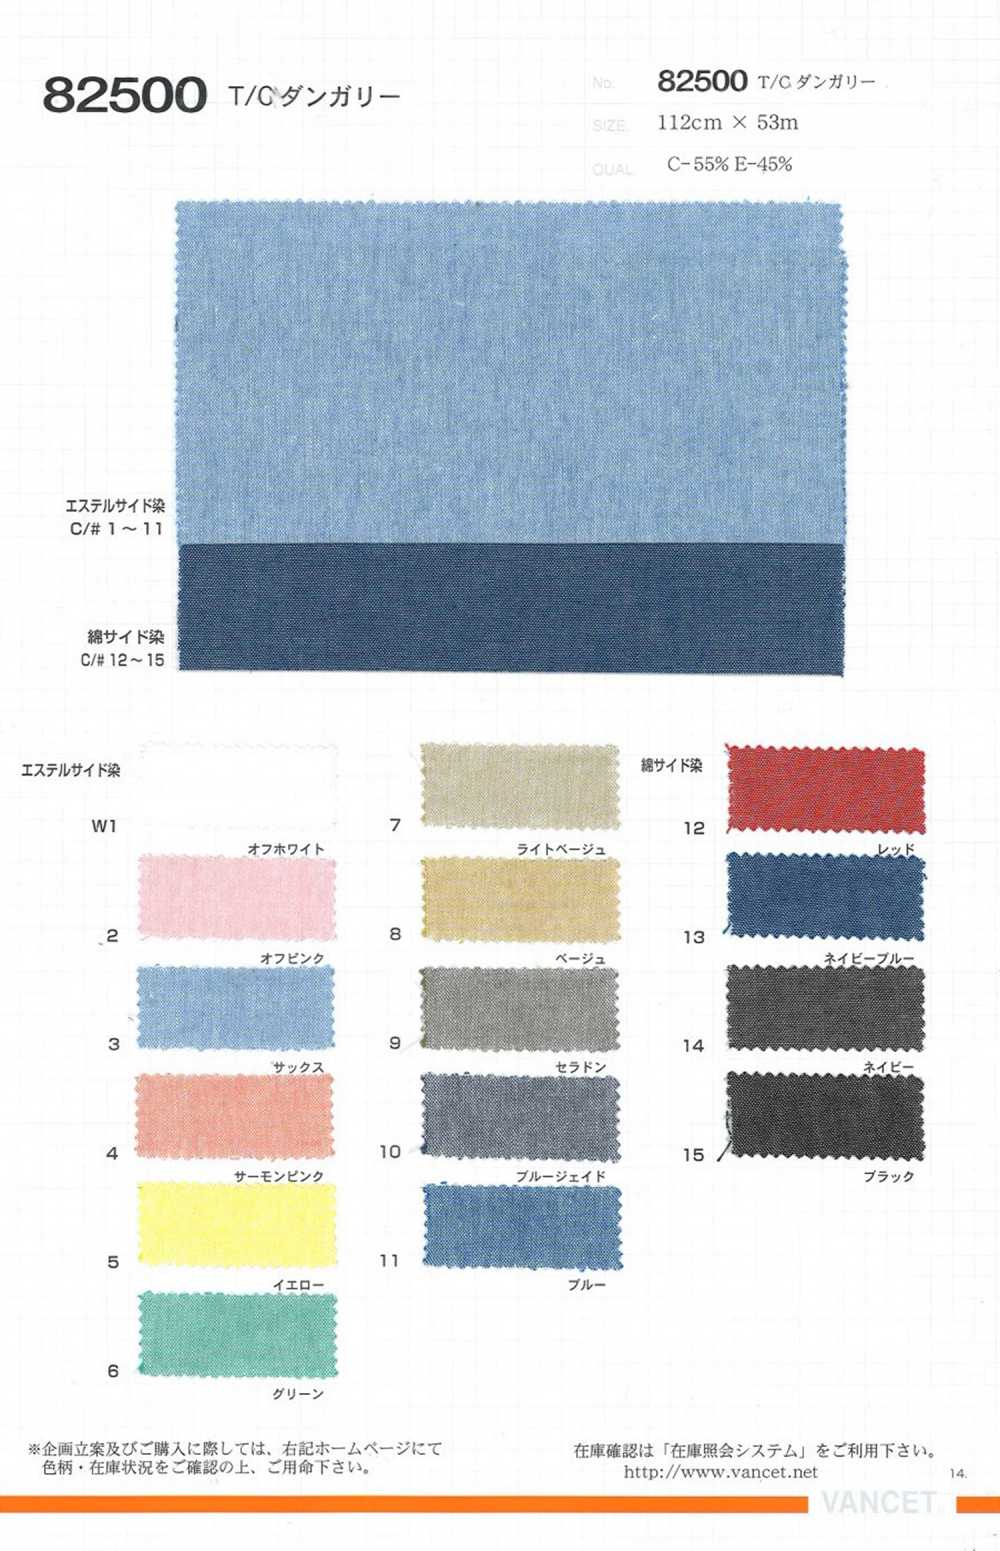 82500 T/C Dungaree[Textile / Fabric] VANCET